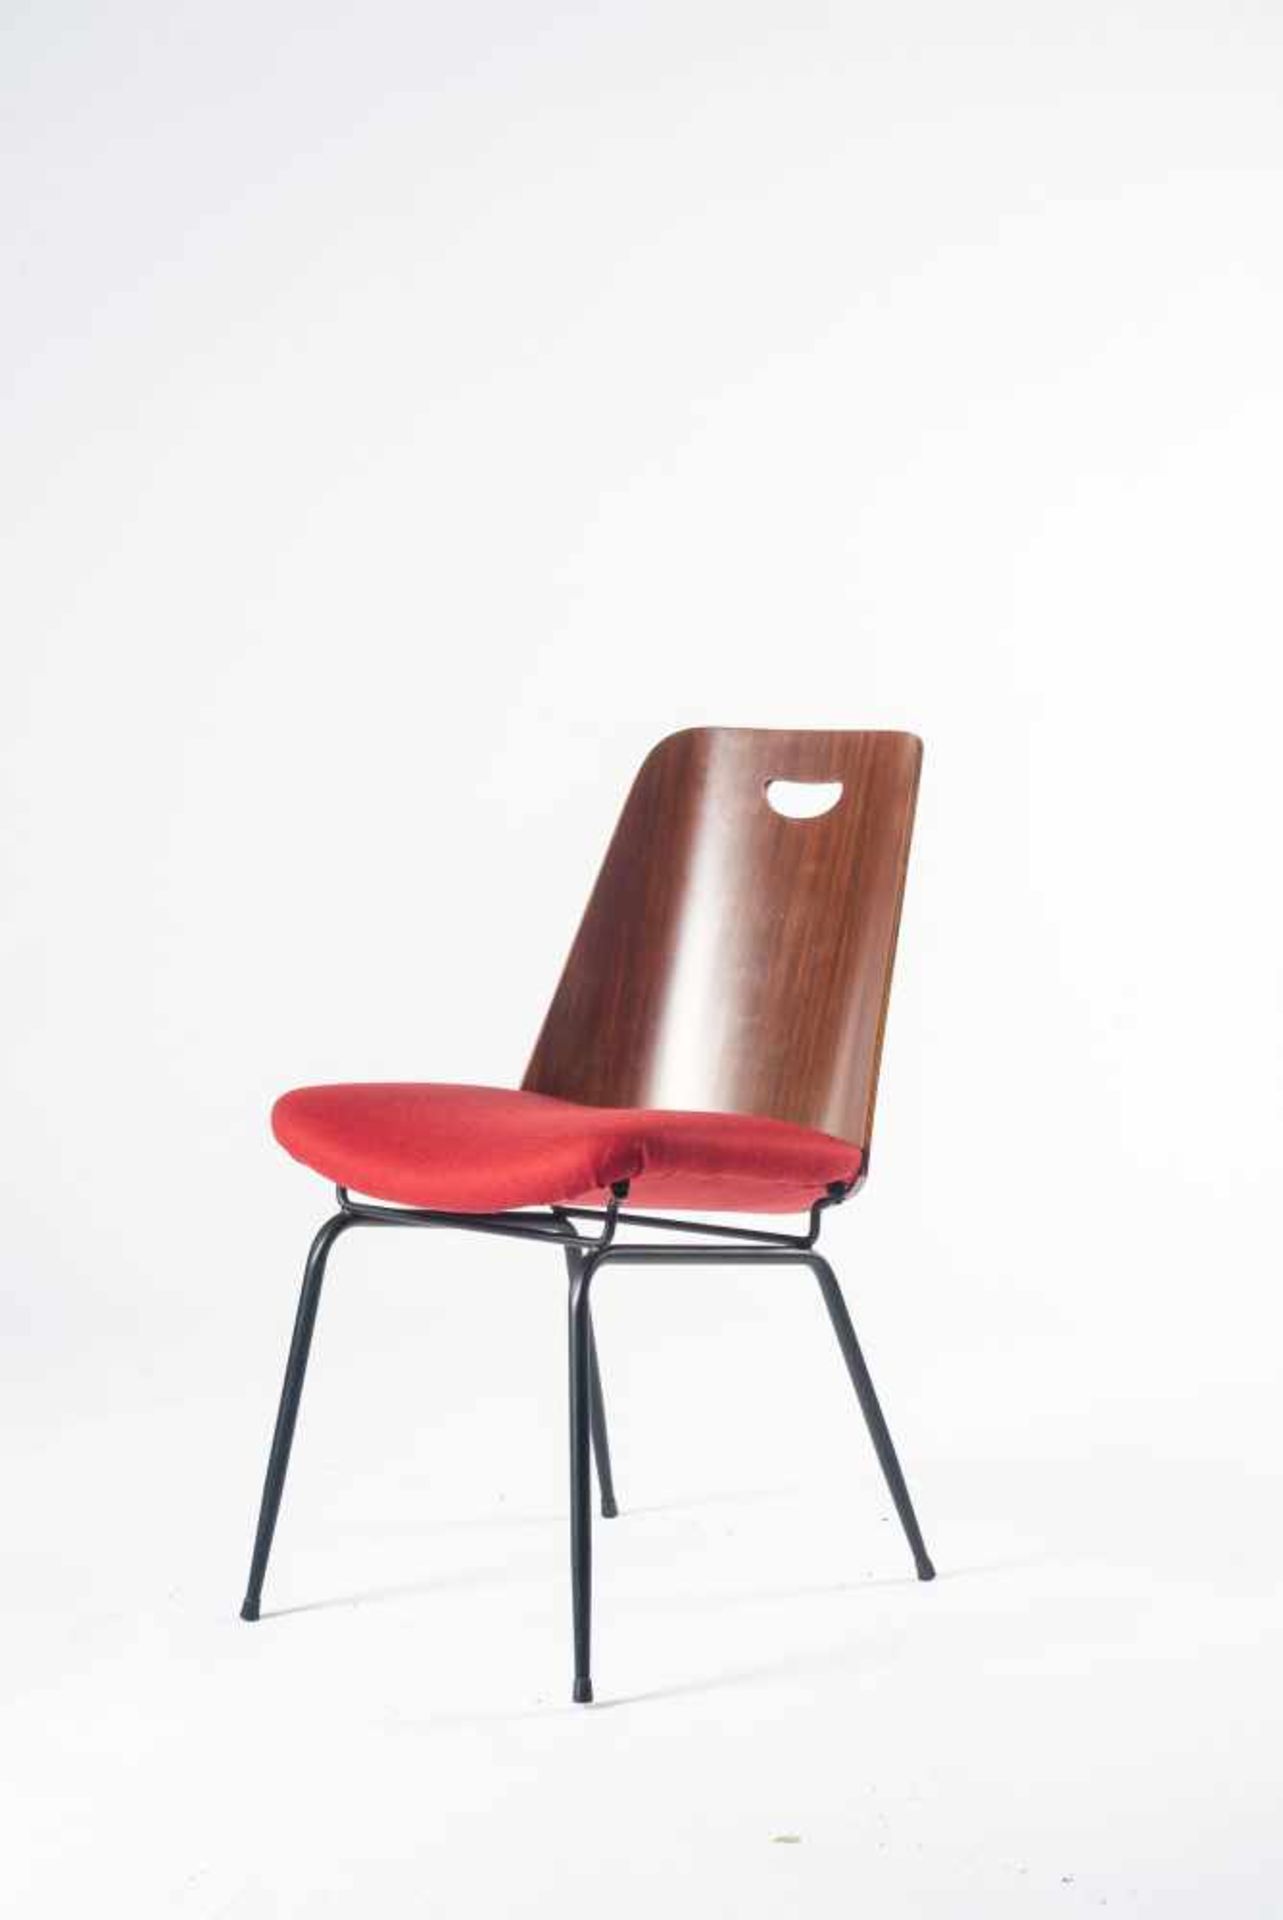 Vier Stühle 'Du 22', um 1952 Gastone Rinaldi H. 80 x 50 x 60 cm. Rima, Padua. Stahlrohr, schwarz - Bild 8 aus 8